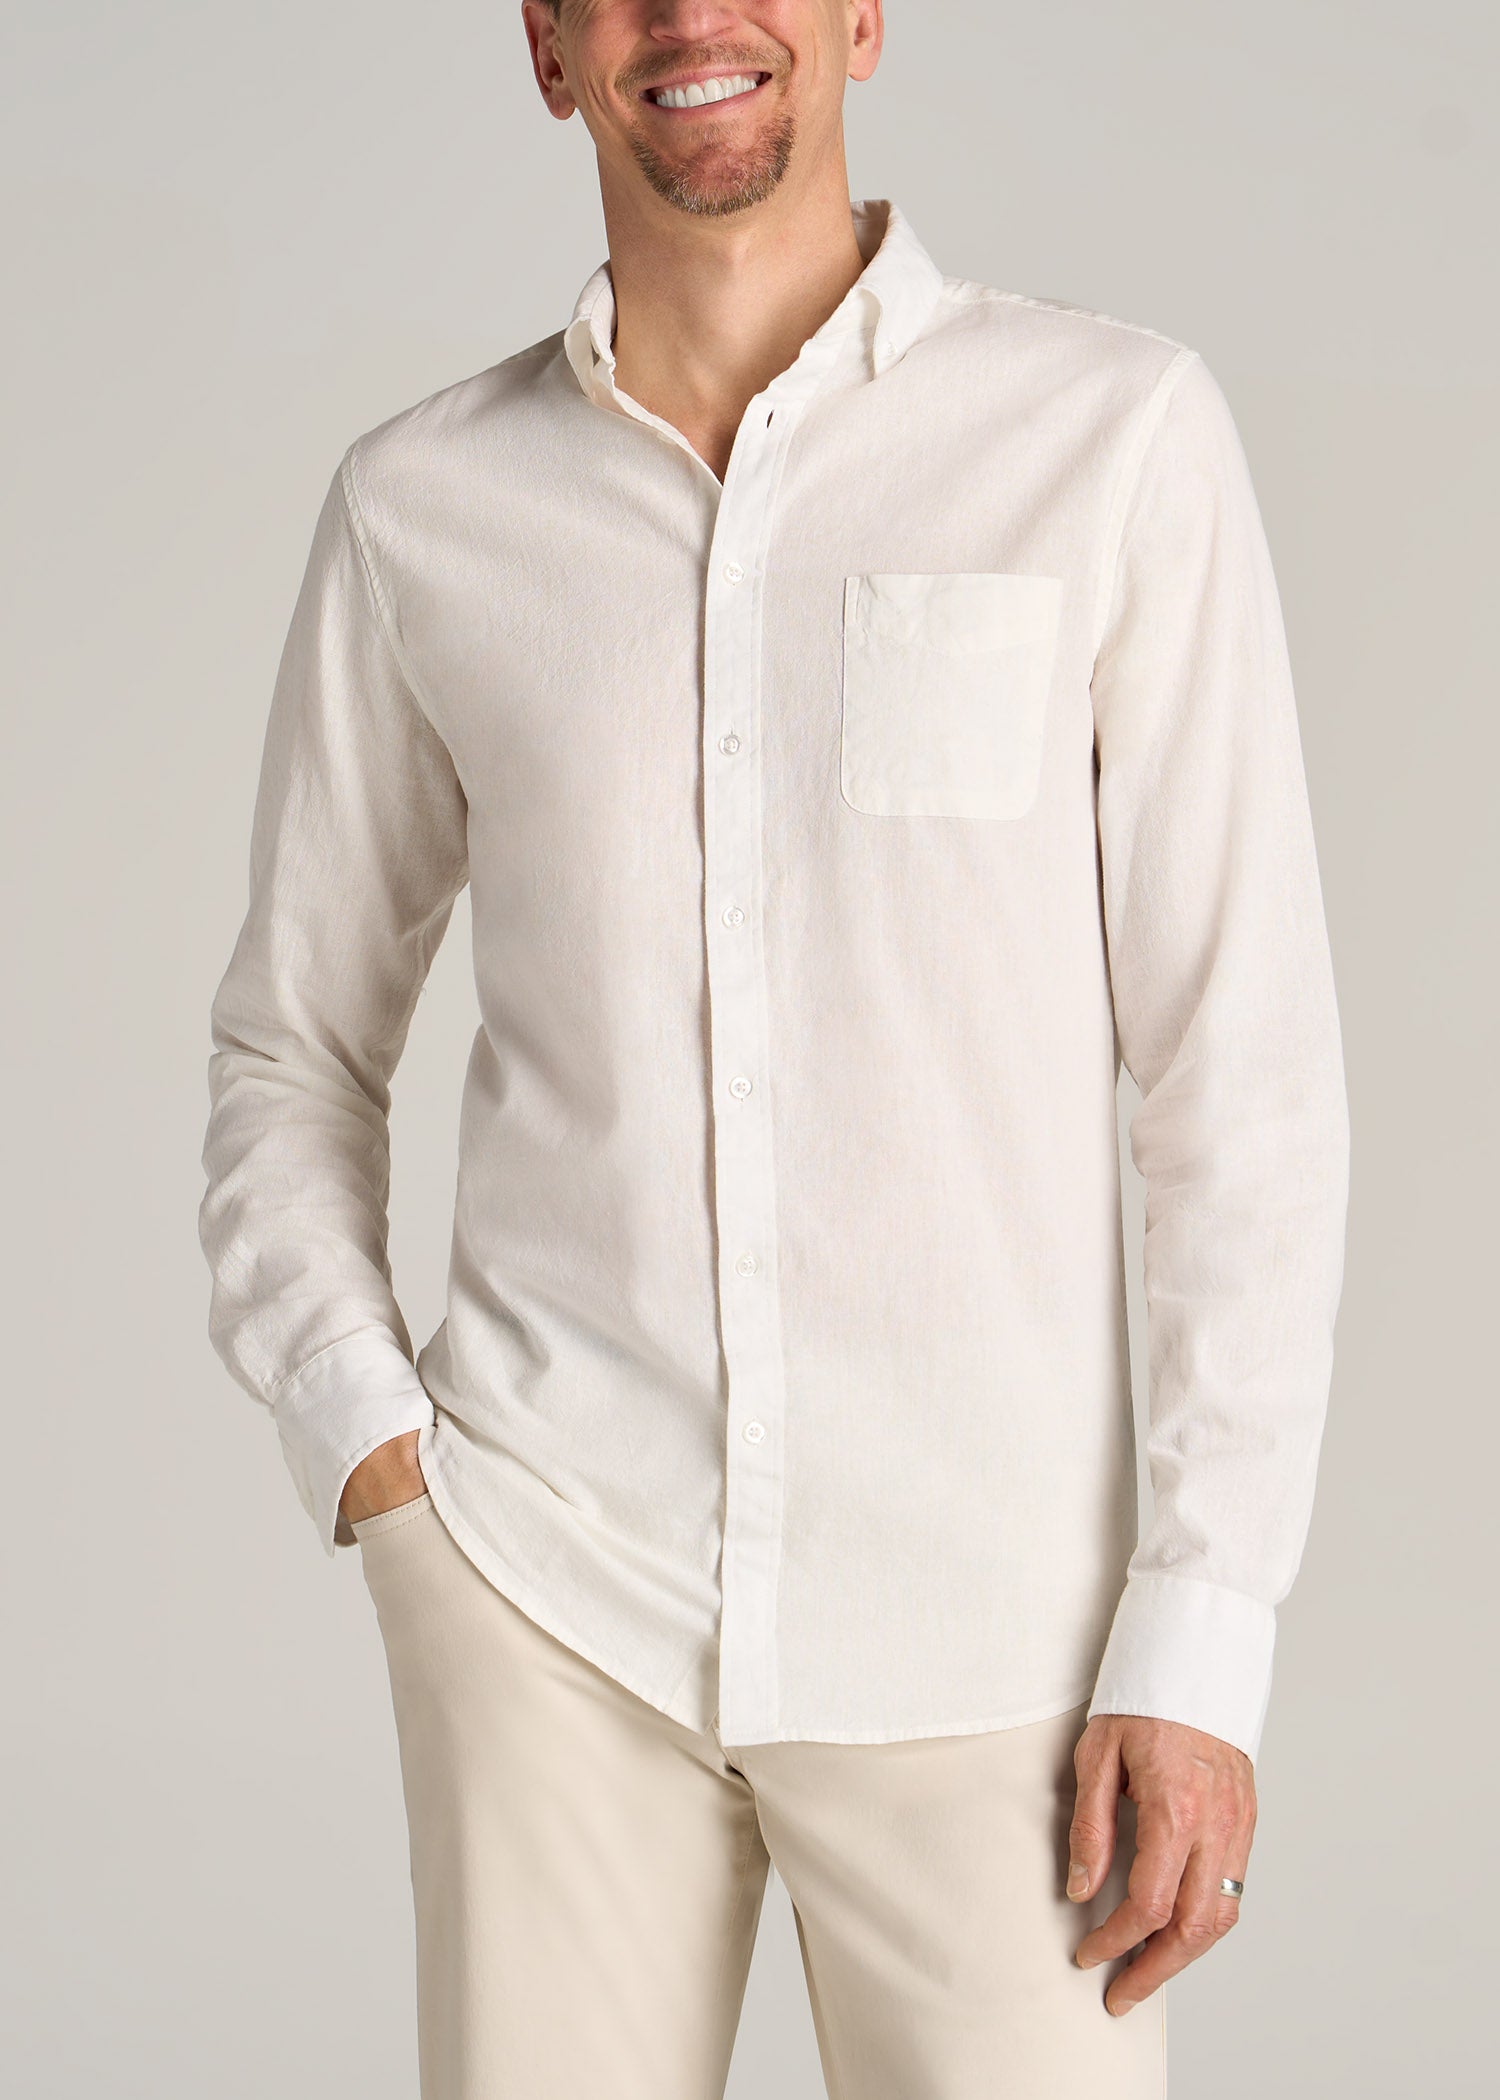 Linen Long Sleeve Shirt for Tall Men | American Tall